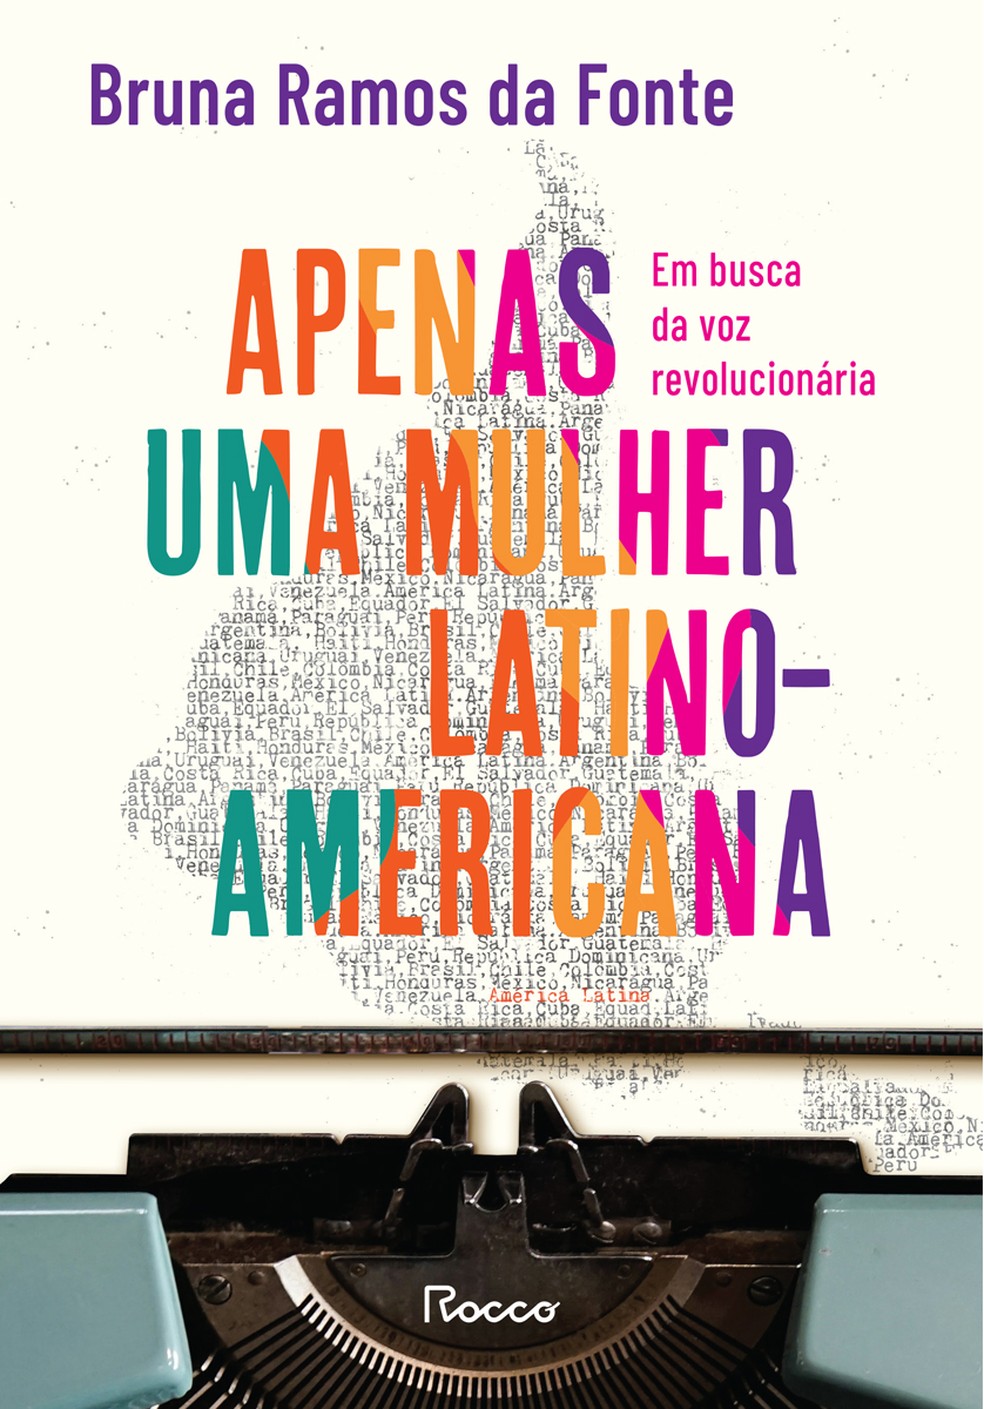 Capa do livro "Apenas uma uma mulher latino-americana", de Bruna Ramos da Fonte — Foto: Reprodução